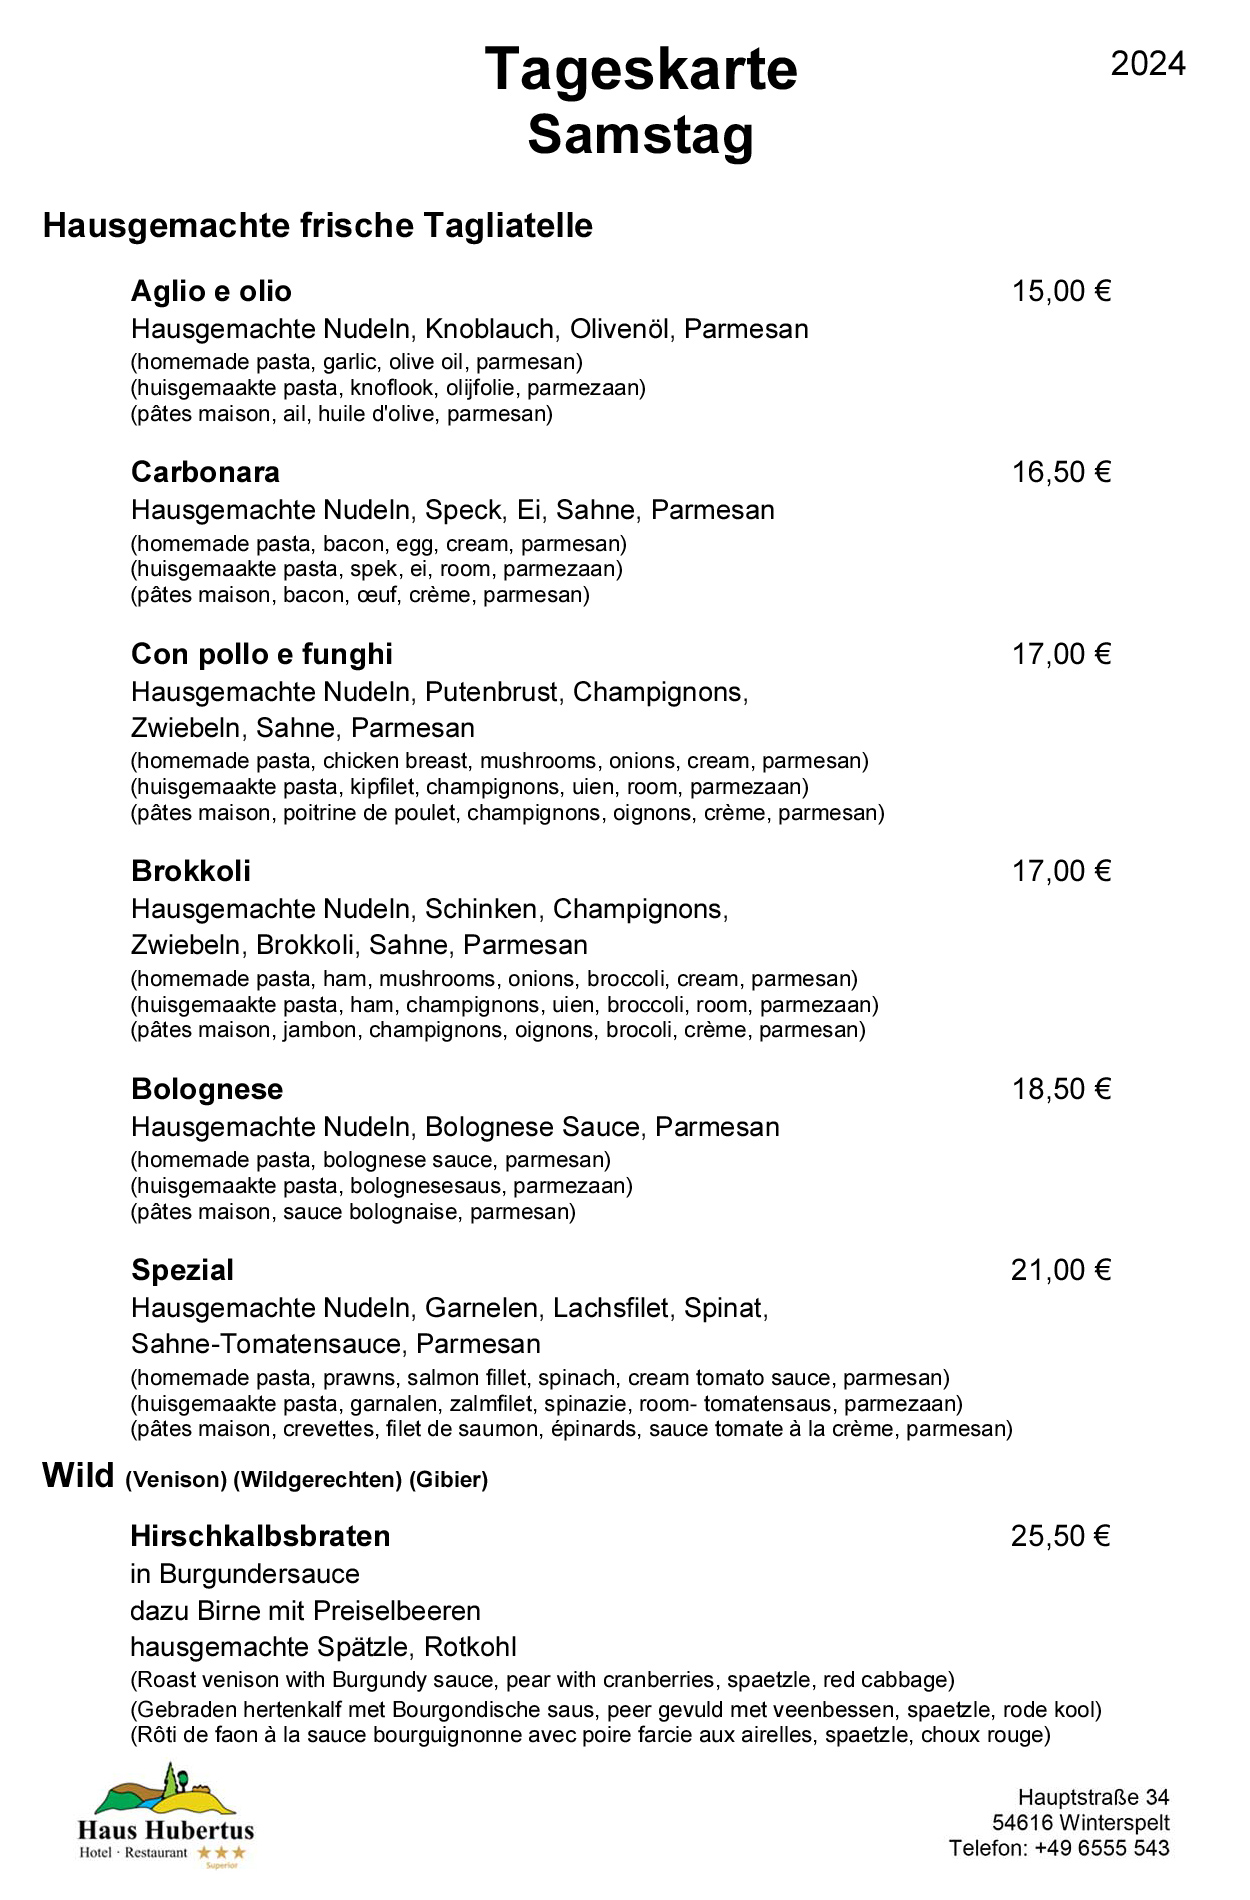 Hotel - Restaurant Haus Hubertus - Menu 01/2024 - Daily menu / Saturday